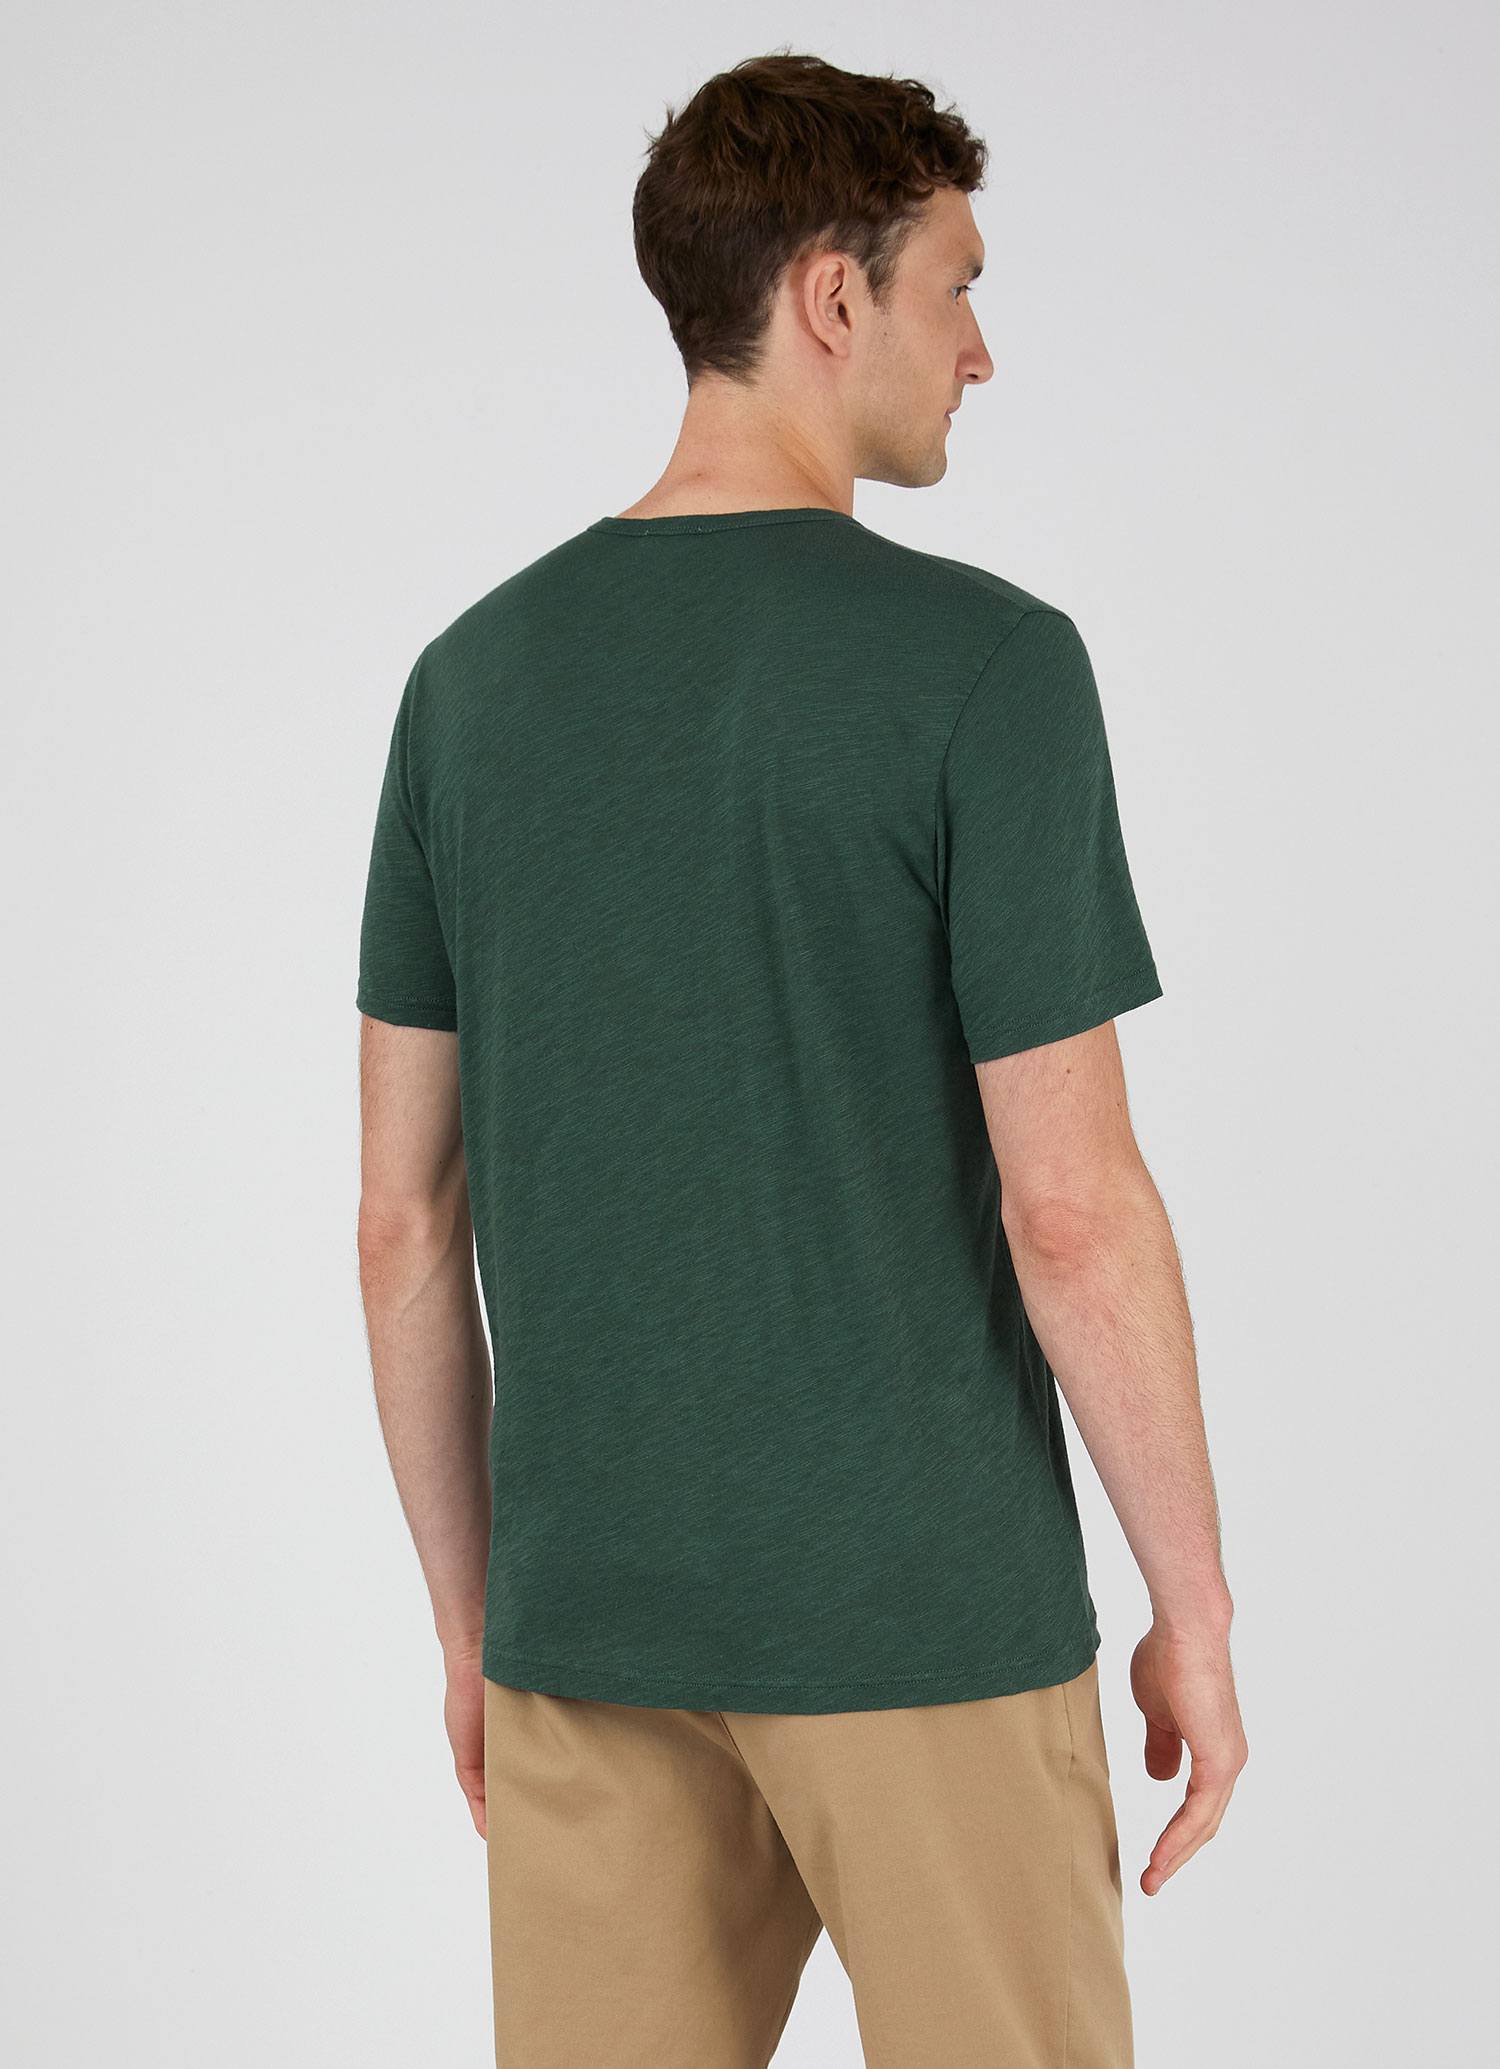 Men's Cotton Linen T-shirt in Deep Green